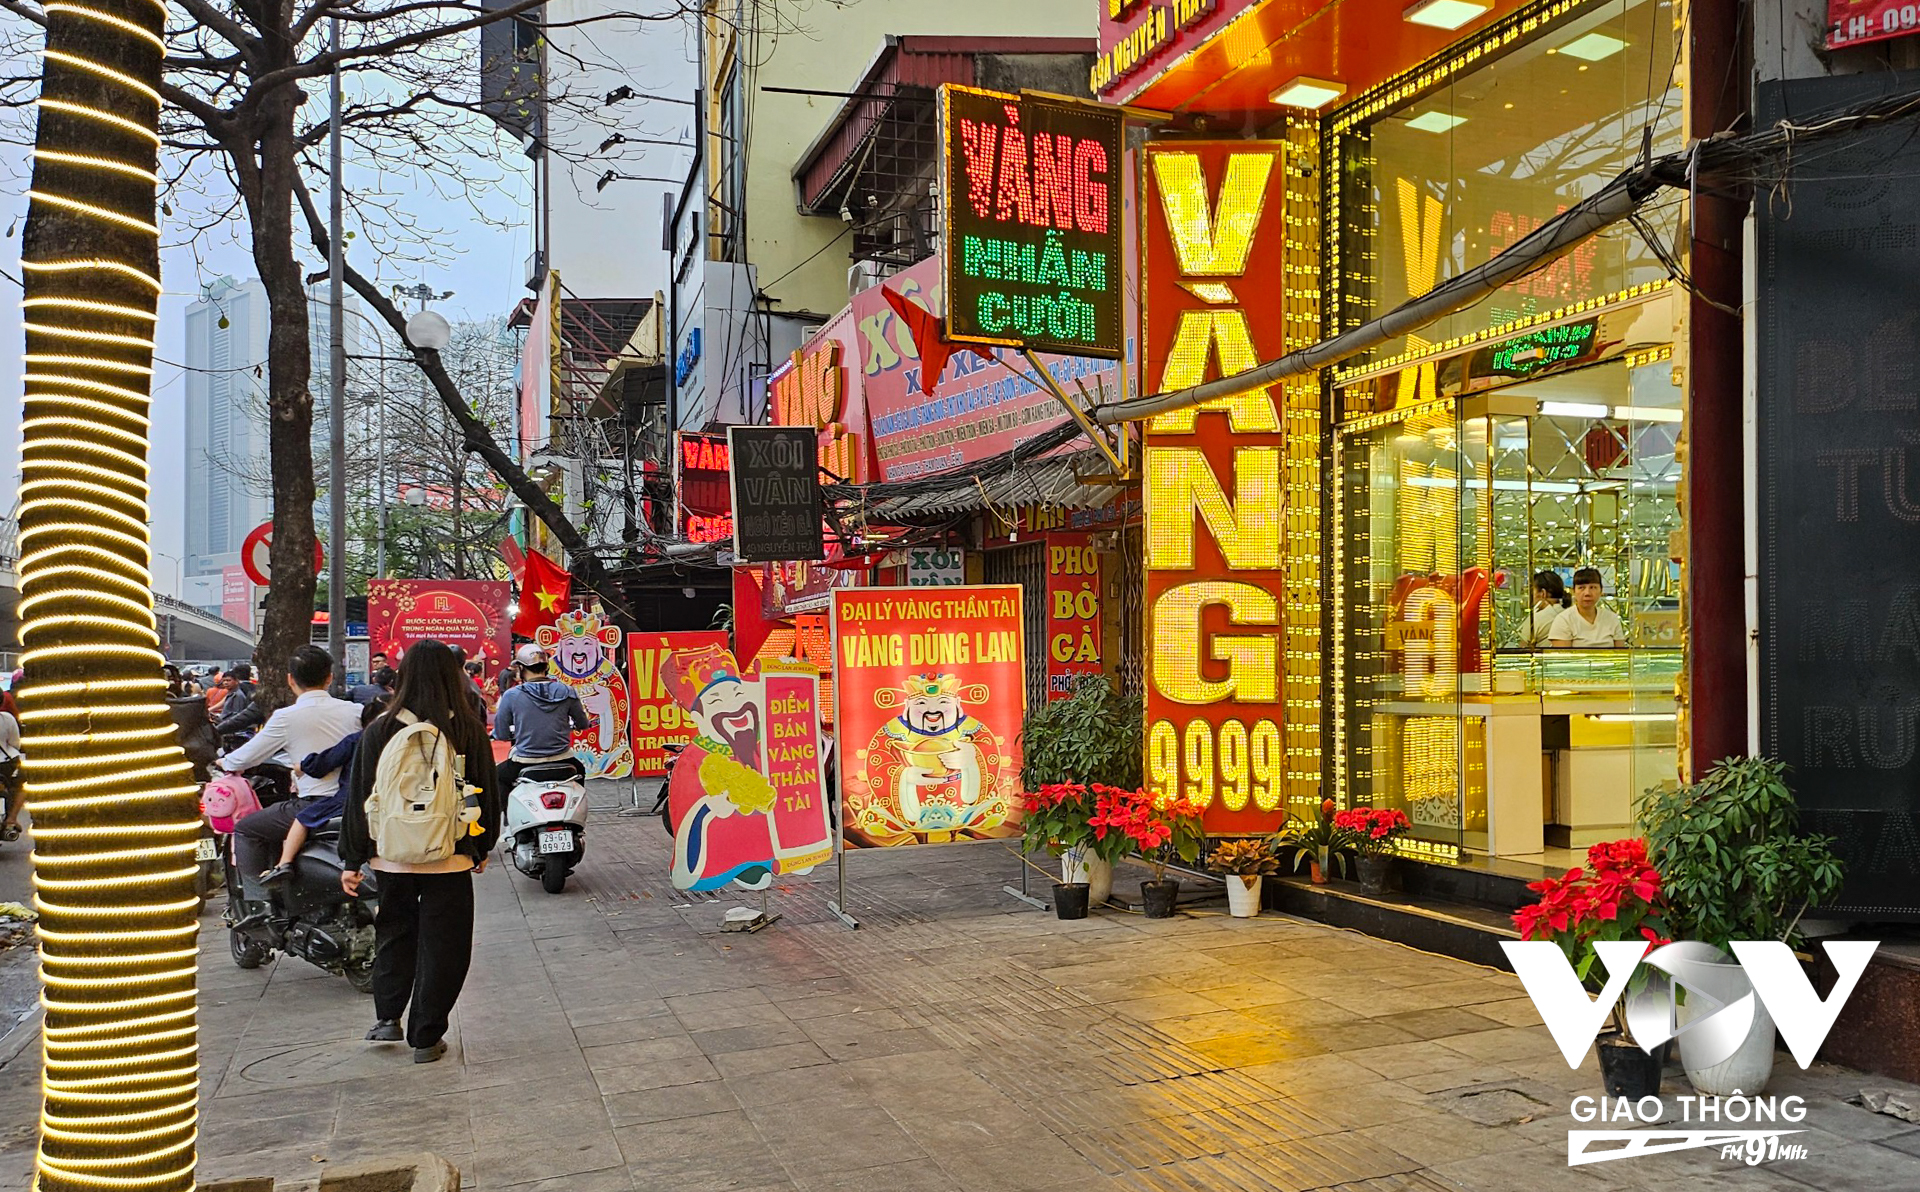 Ghi nhận thêm của PV trên phố Nguyễn Trãi lúc 7h sáng, một dọc cửa hàng vàng nhưng khá vắng vẻ do đúng vào thời điểm đi làm đầu tuần nên nhiều người chưa quyết định mua vào buổi sáng